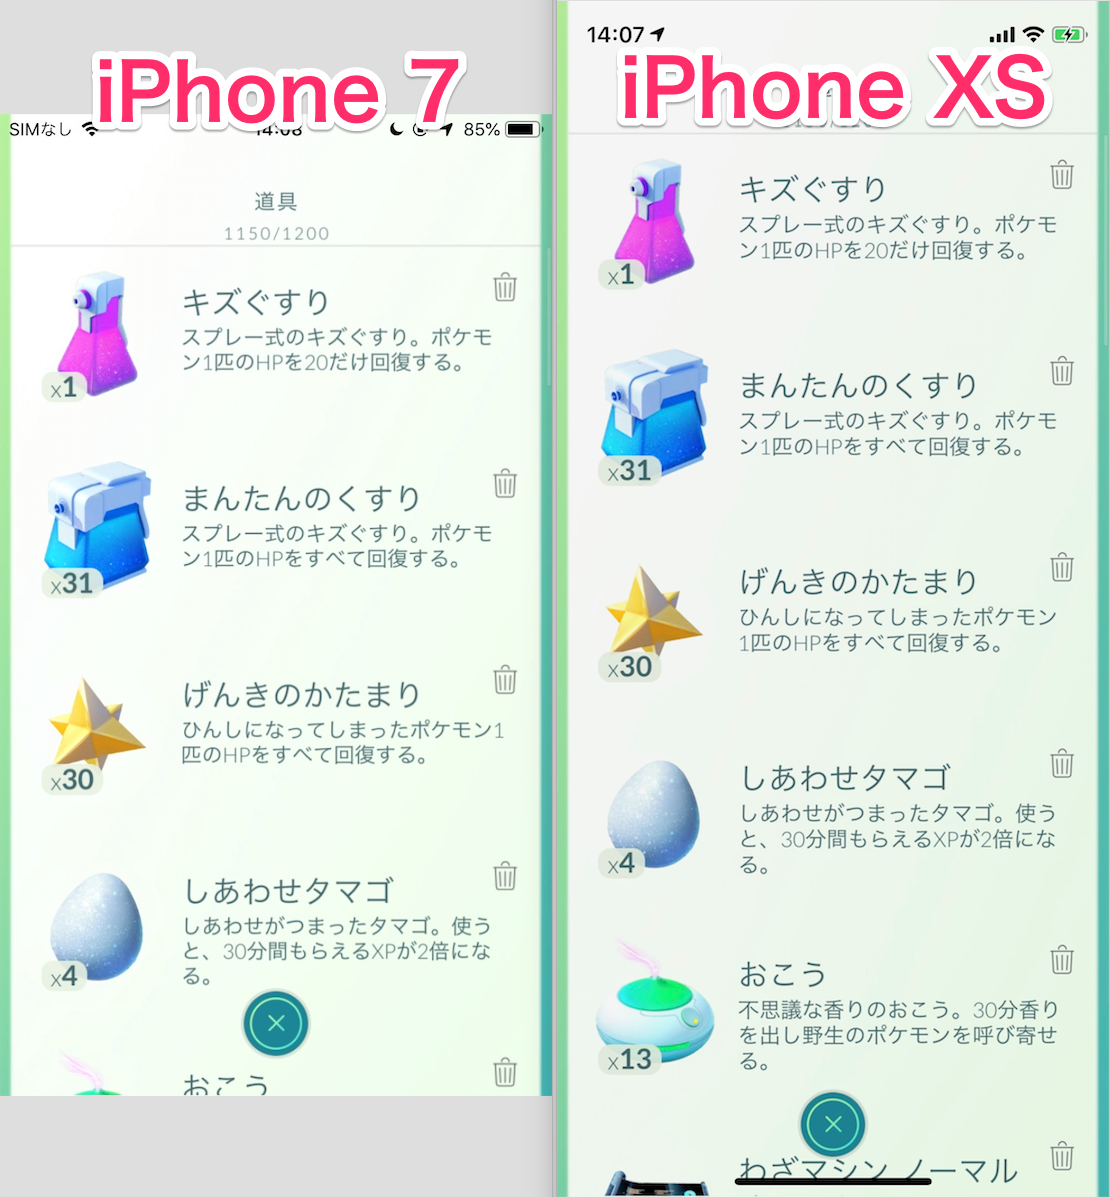 ポケモンgo Iphone Xs Xs Max への機種変更はng フィールドやゲッチャレの画面横幅が狭くなる点に注意 ポケらく